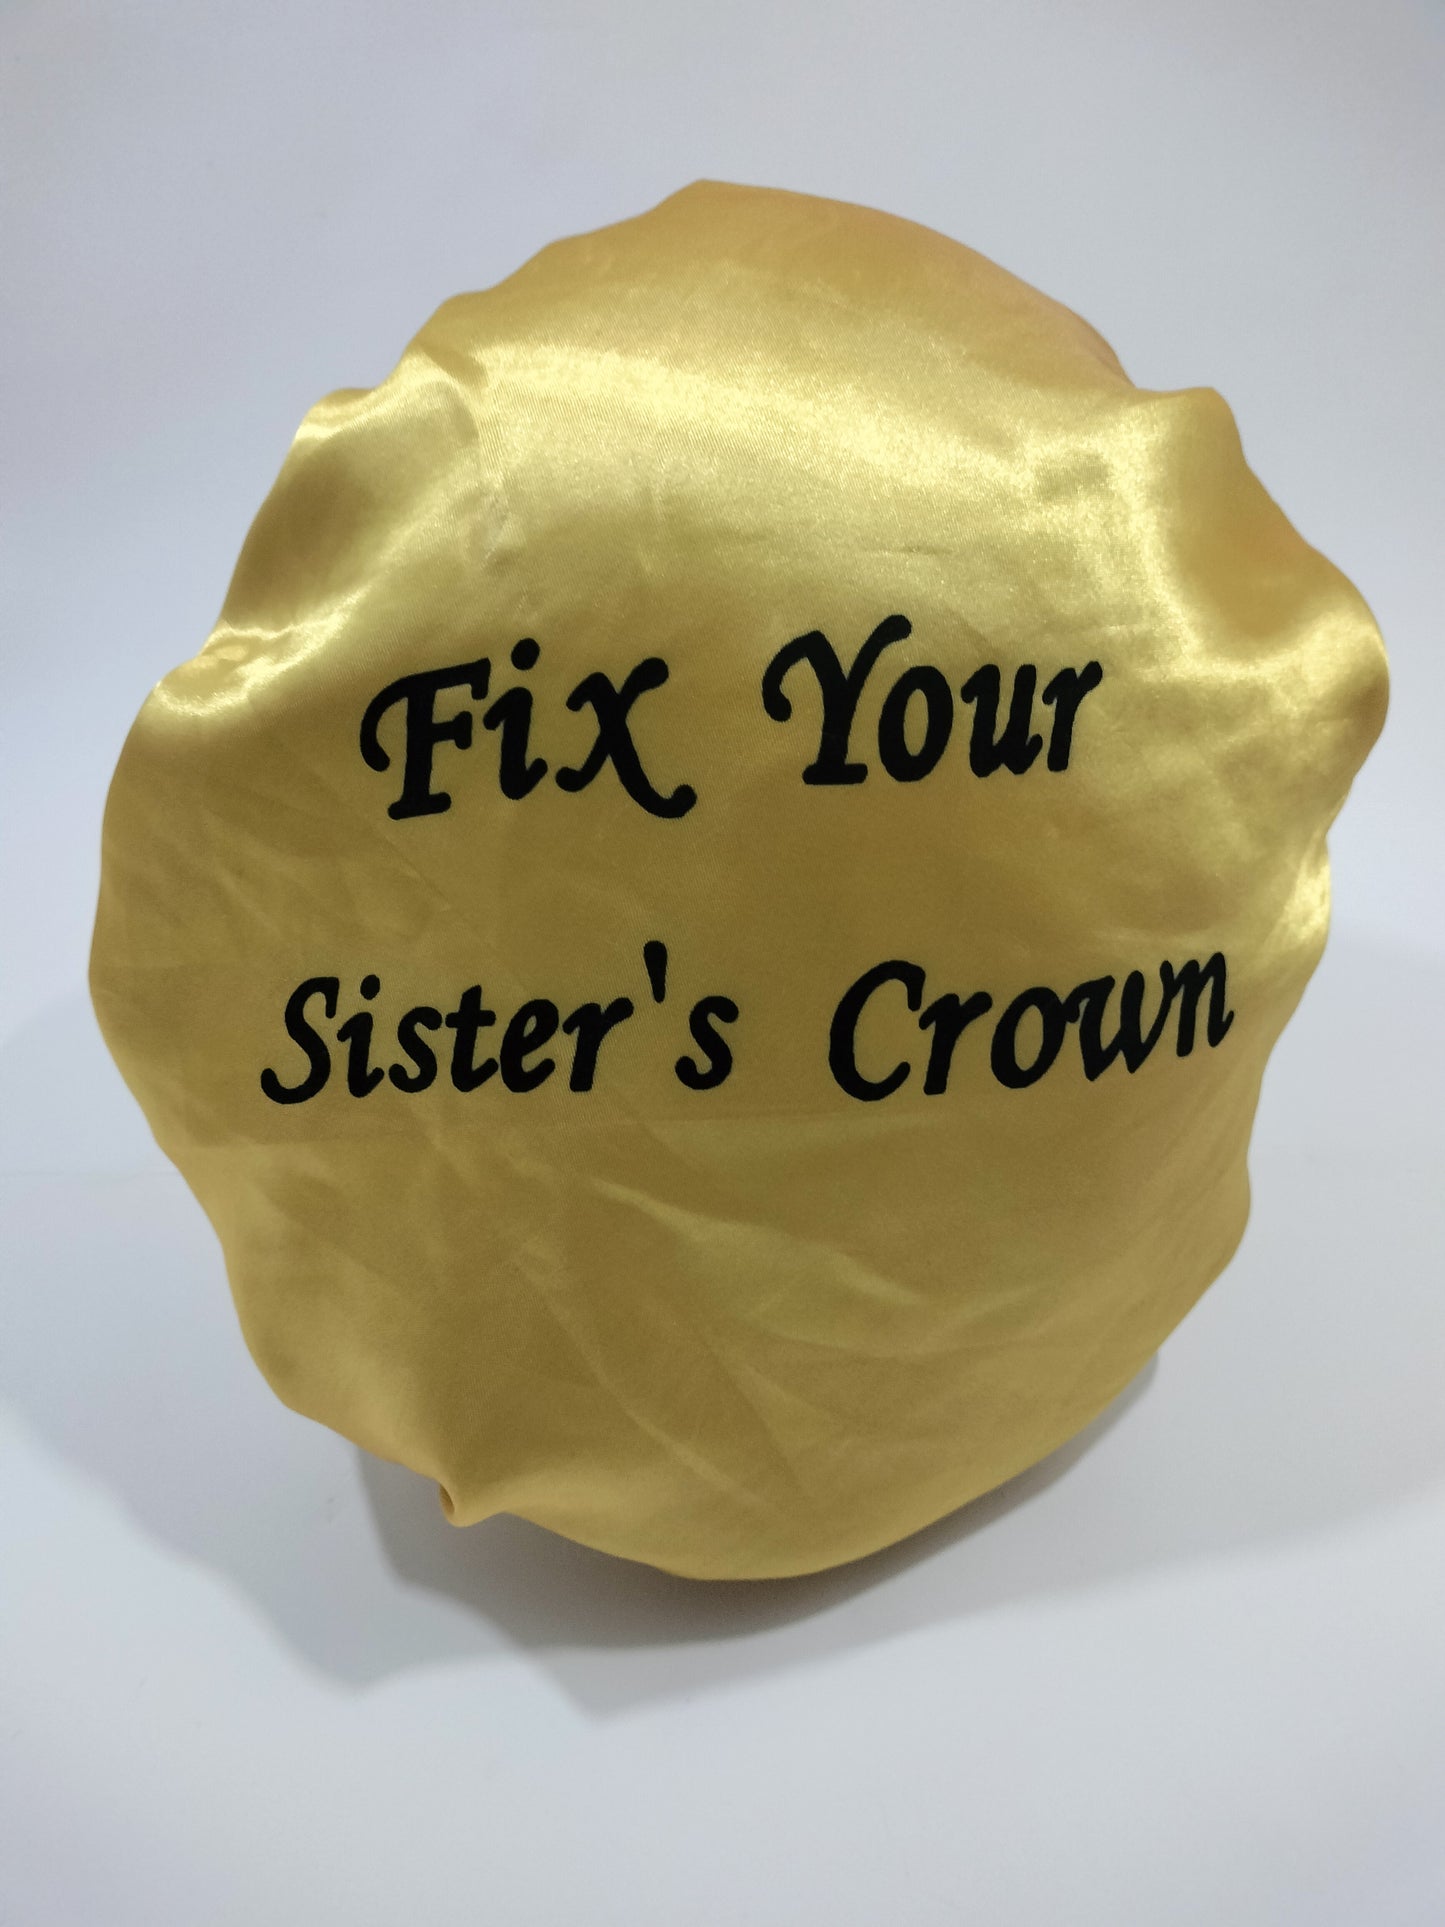 Fix Your Sister's Crown Reversible Satin Bonnet